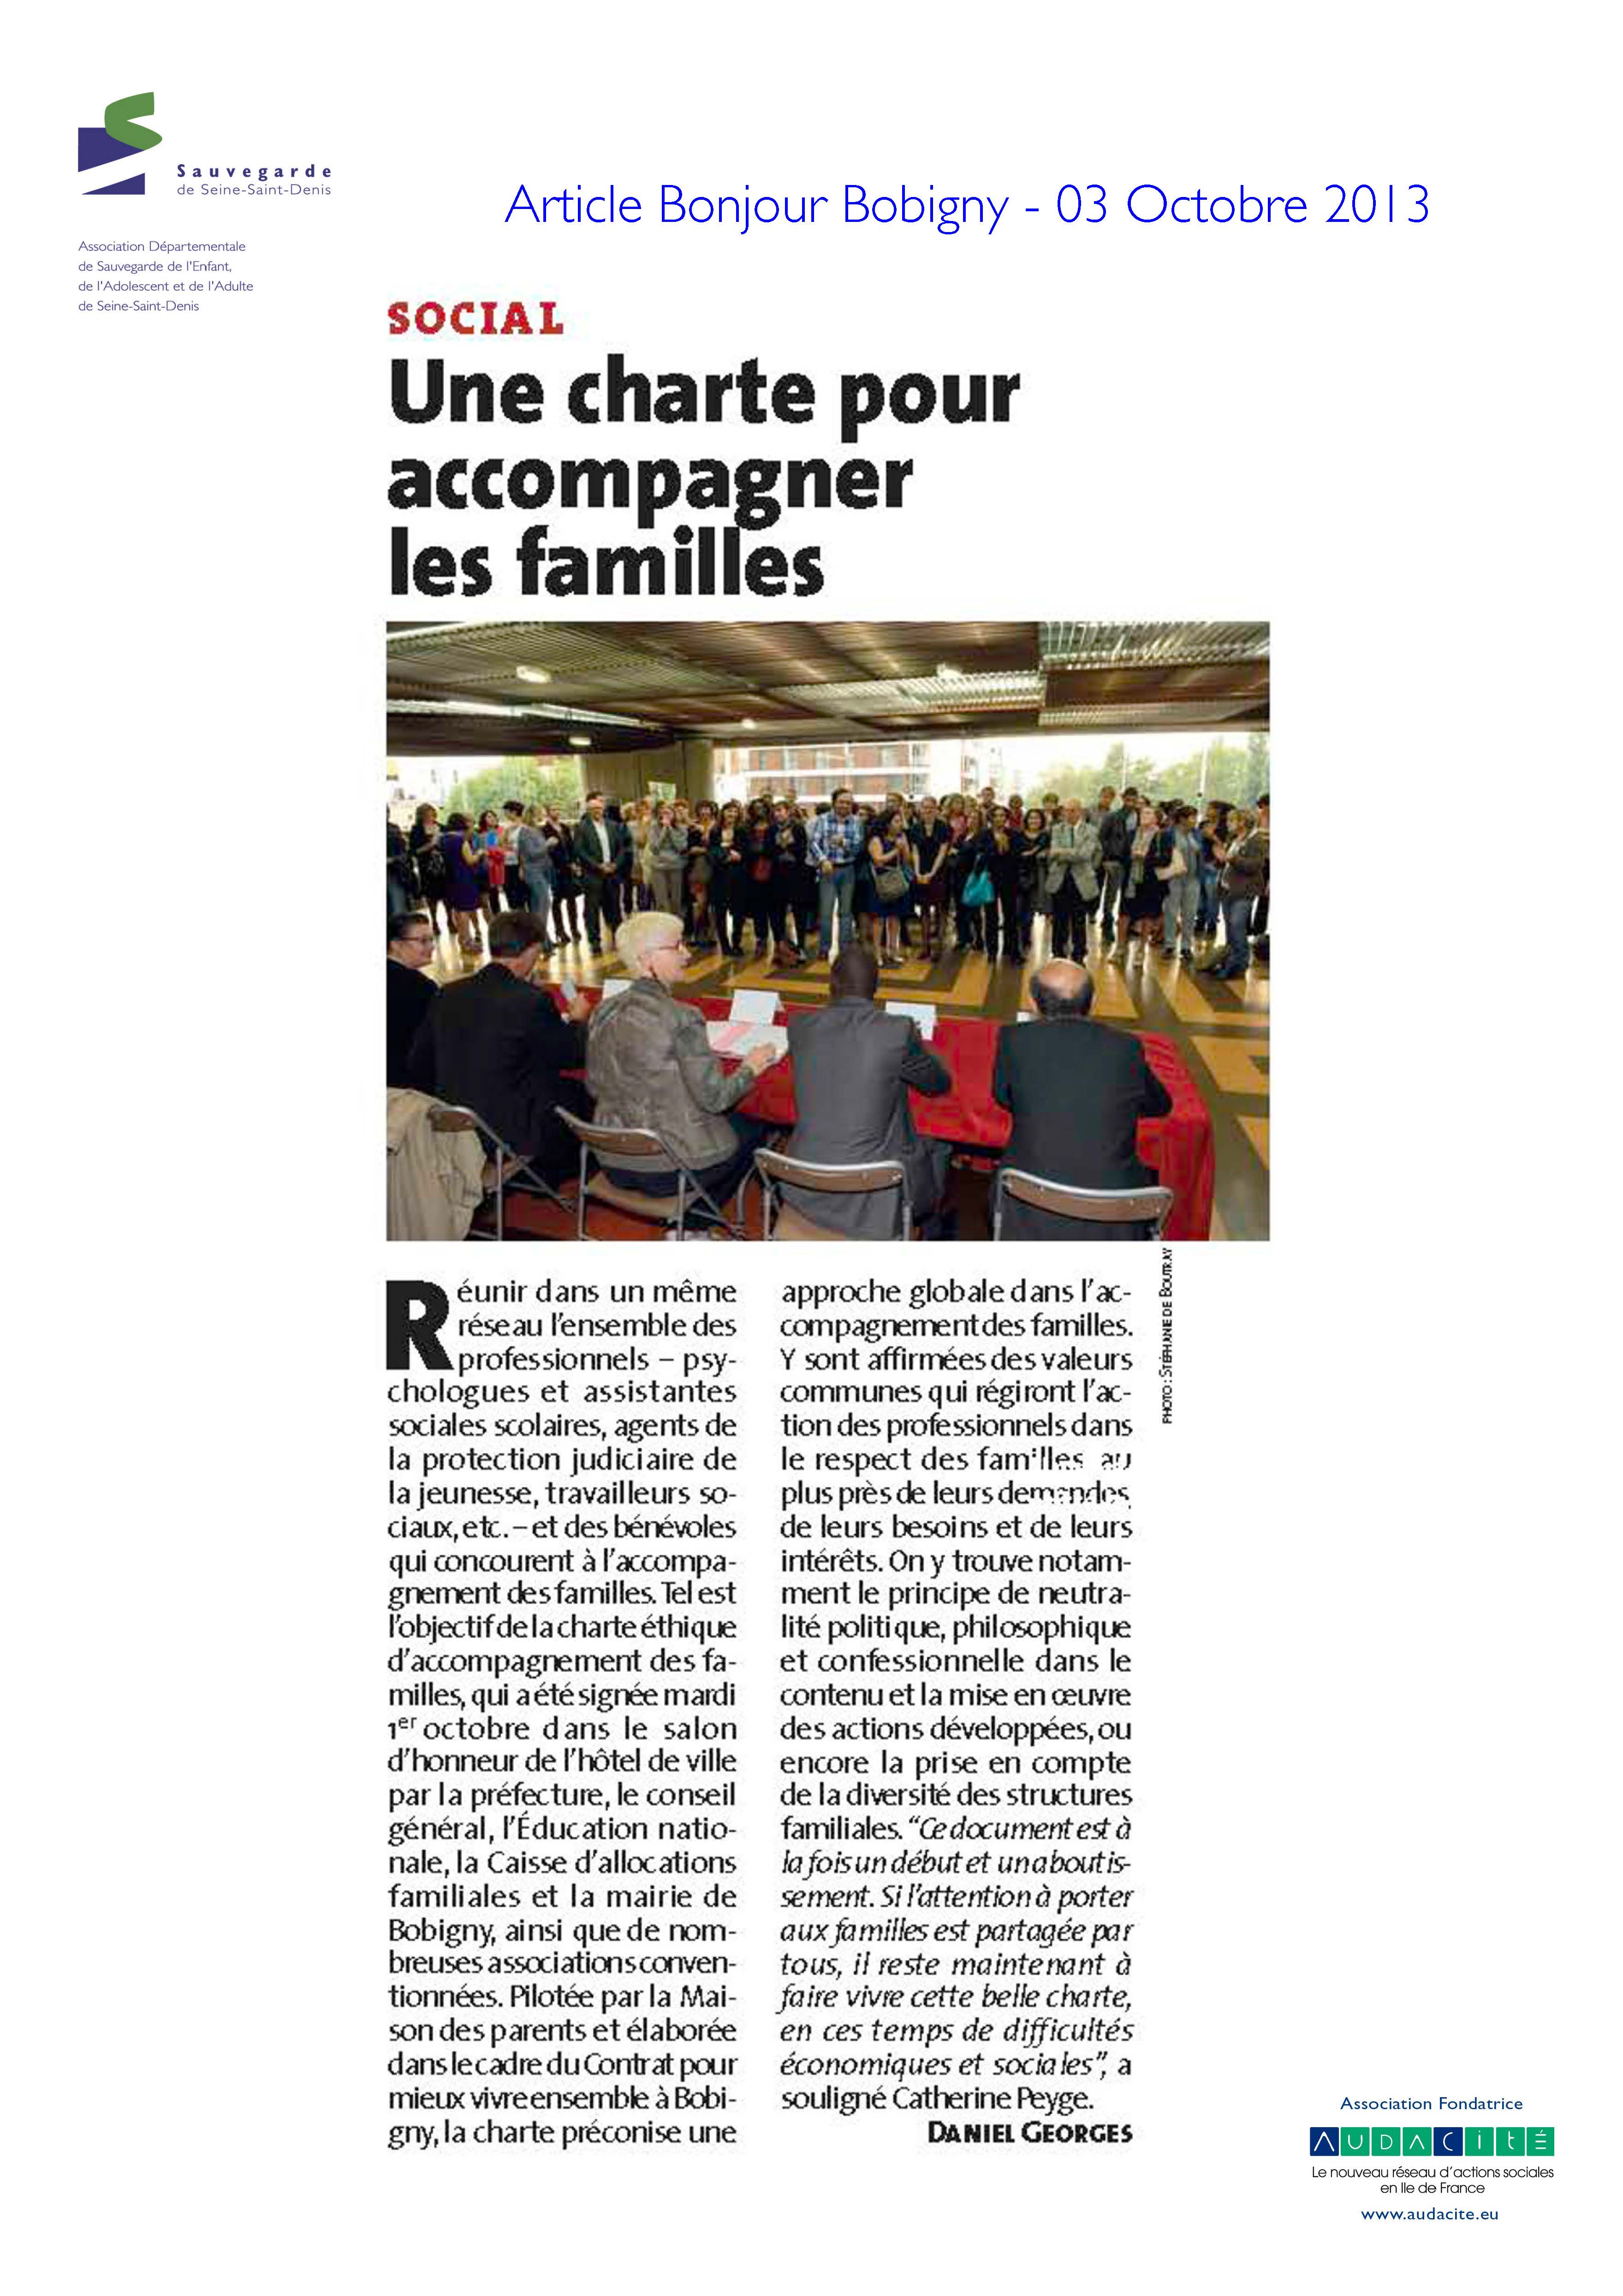 37 - Une charte pour accompagner les familles - Bonjour Bobigny - Oct 2013